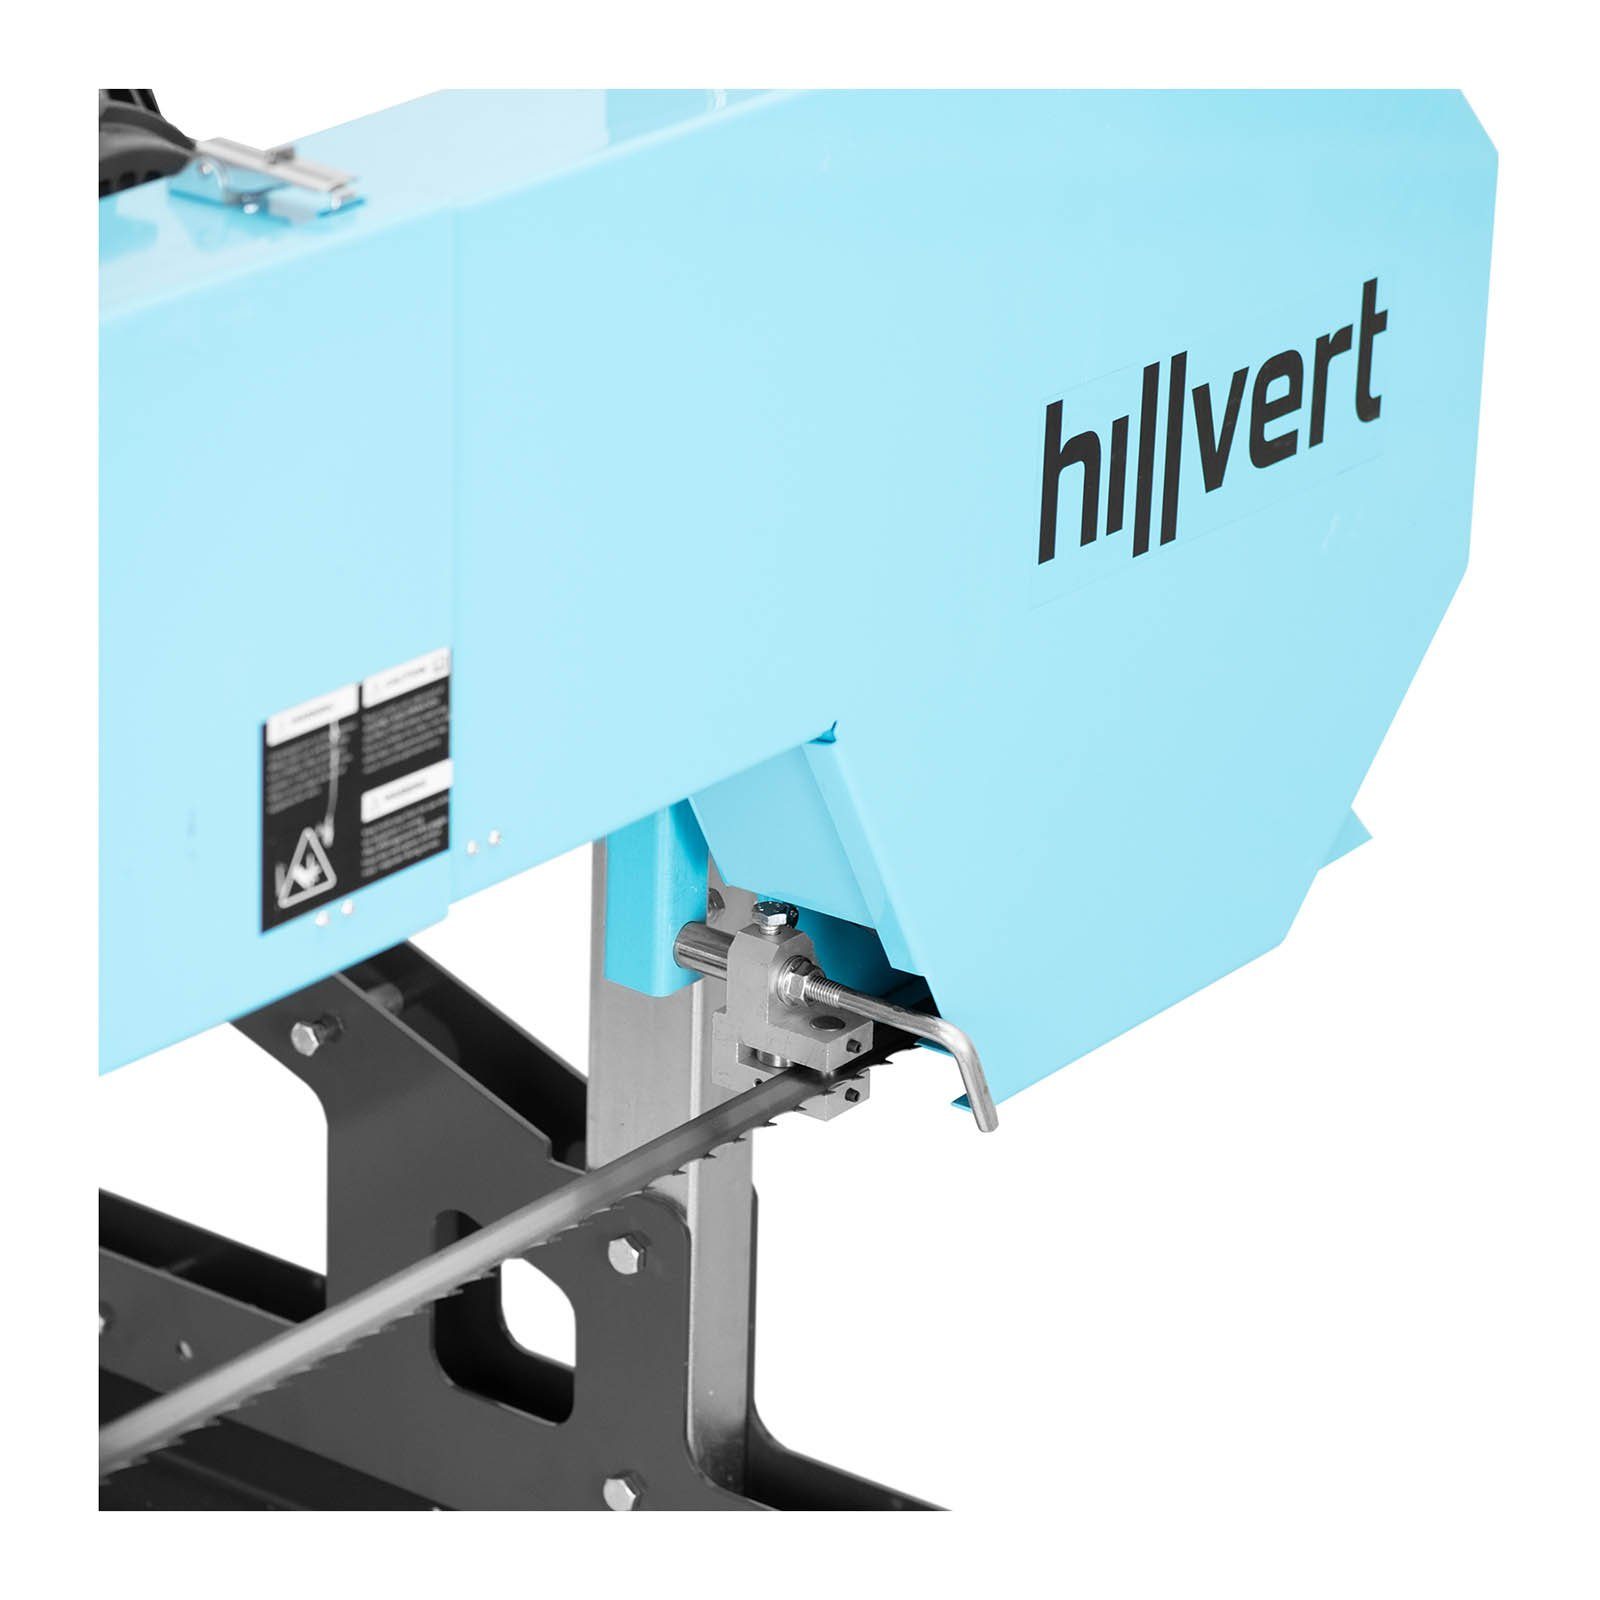 Hillvert Holzbandsäge Elektrische Blockbandsäge 9 5500 / Kleinsägewerk W Blockbandsägewerk